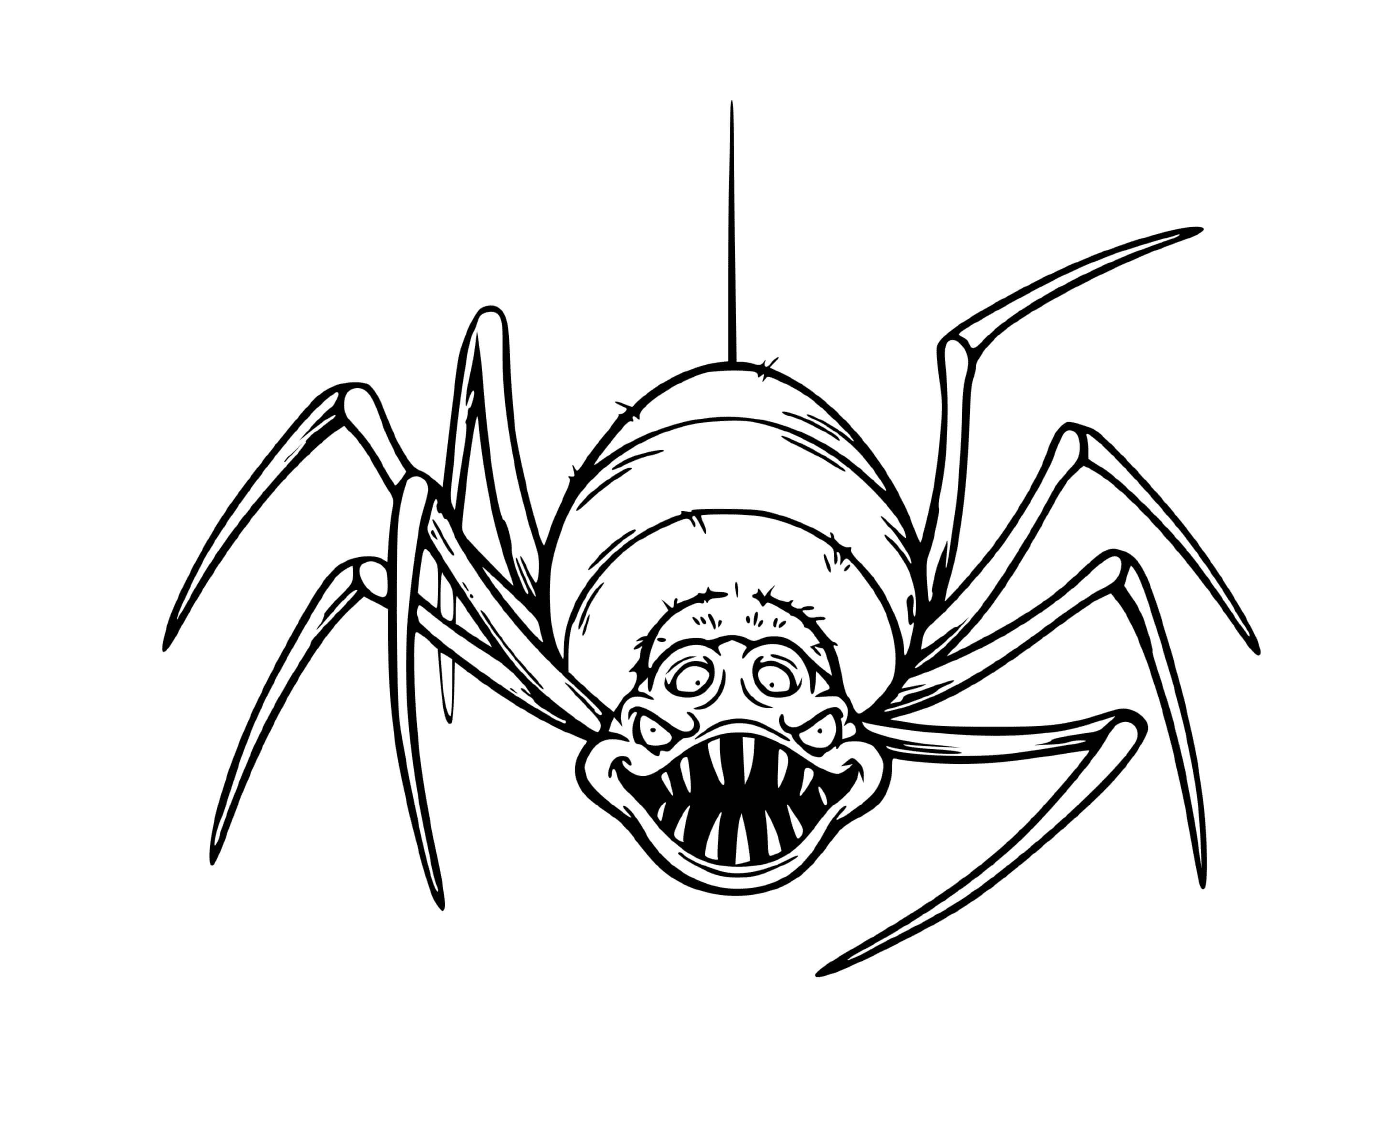  一只可怕的蜘蛛,非常吓人 